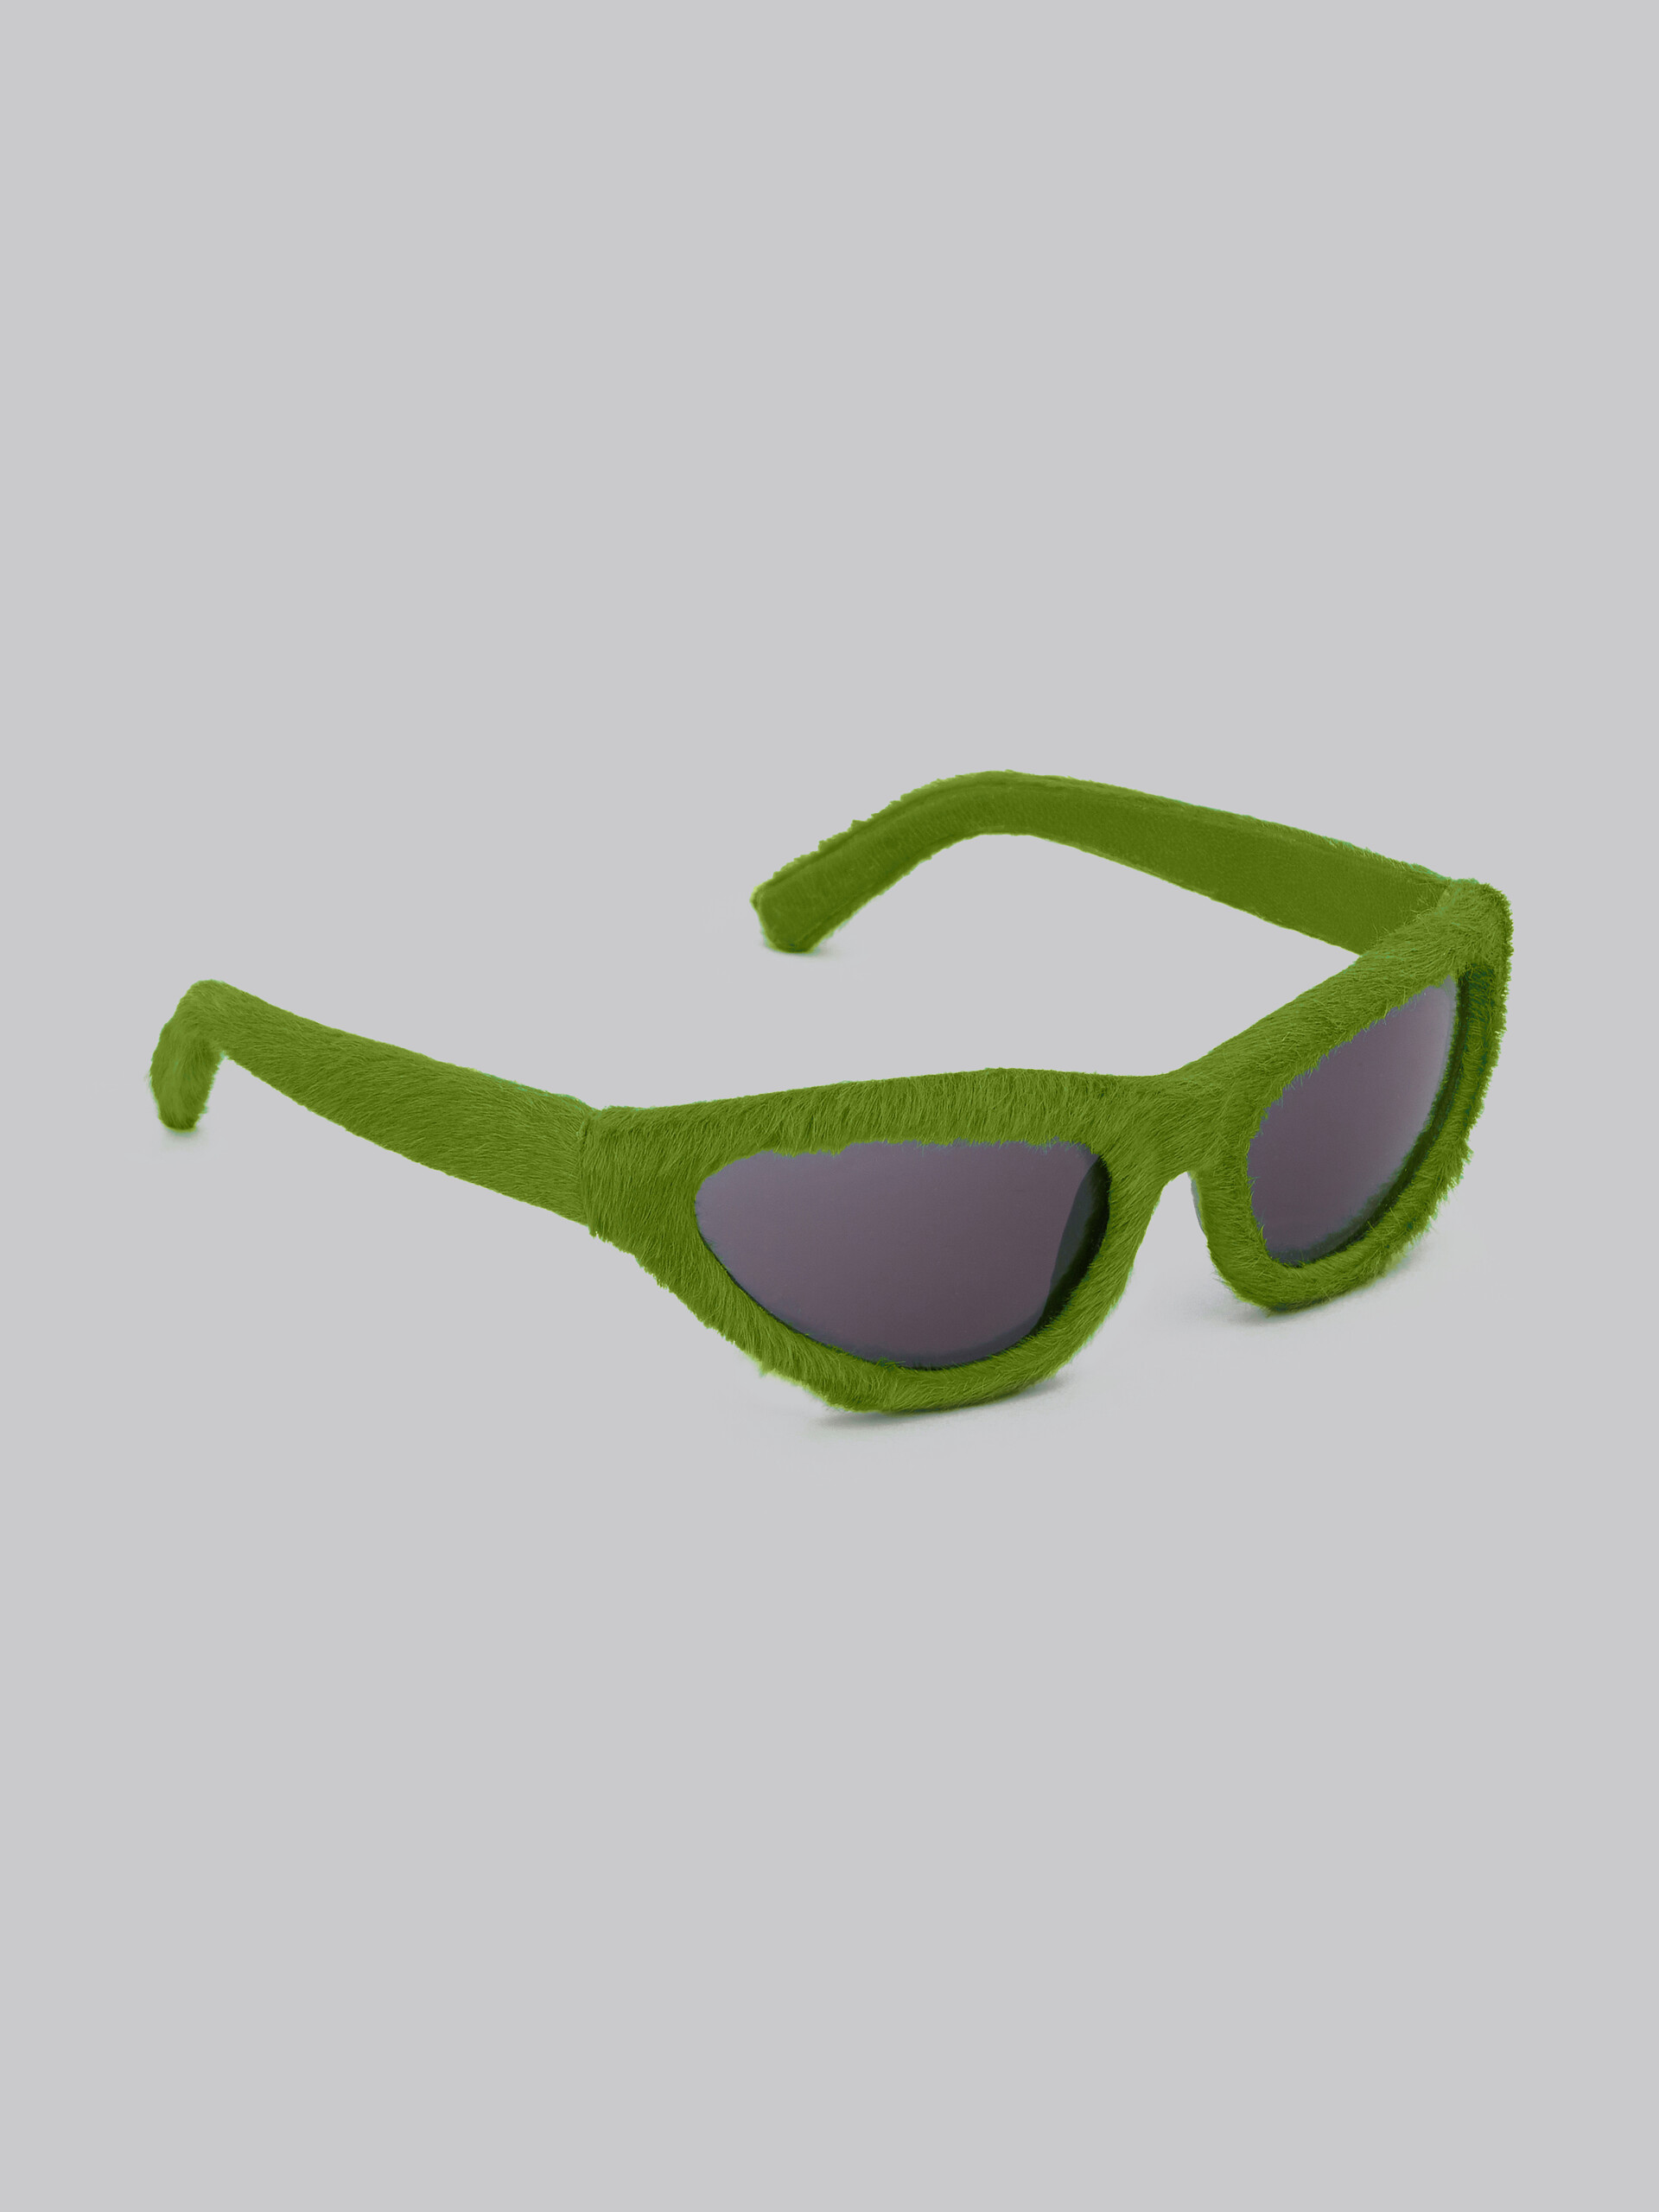 Occhiali Mavericks effetto furry verde - Occhiali da sole - Image 3